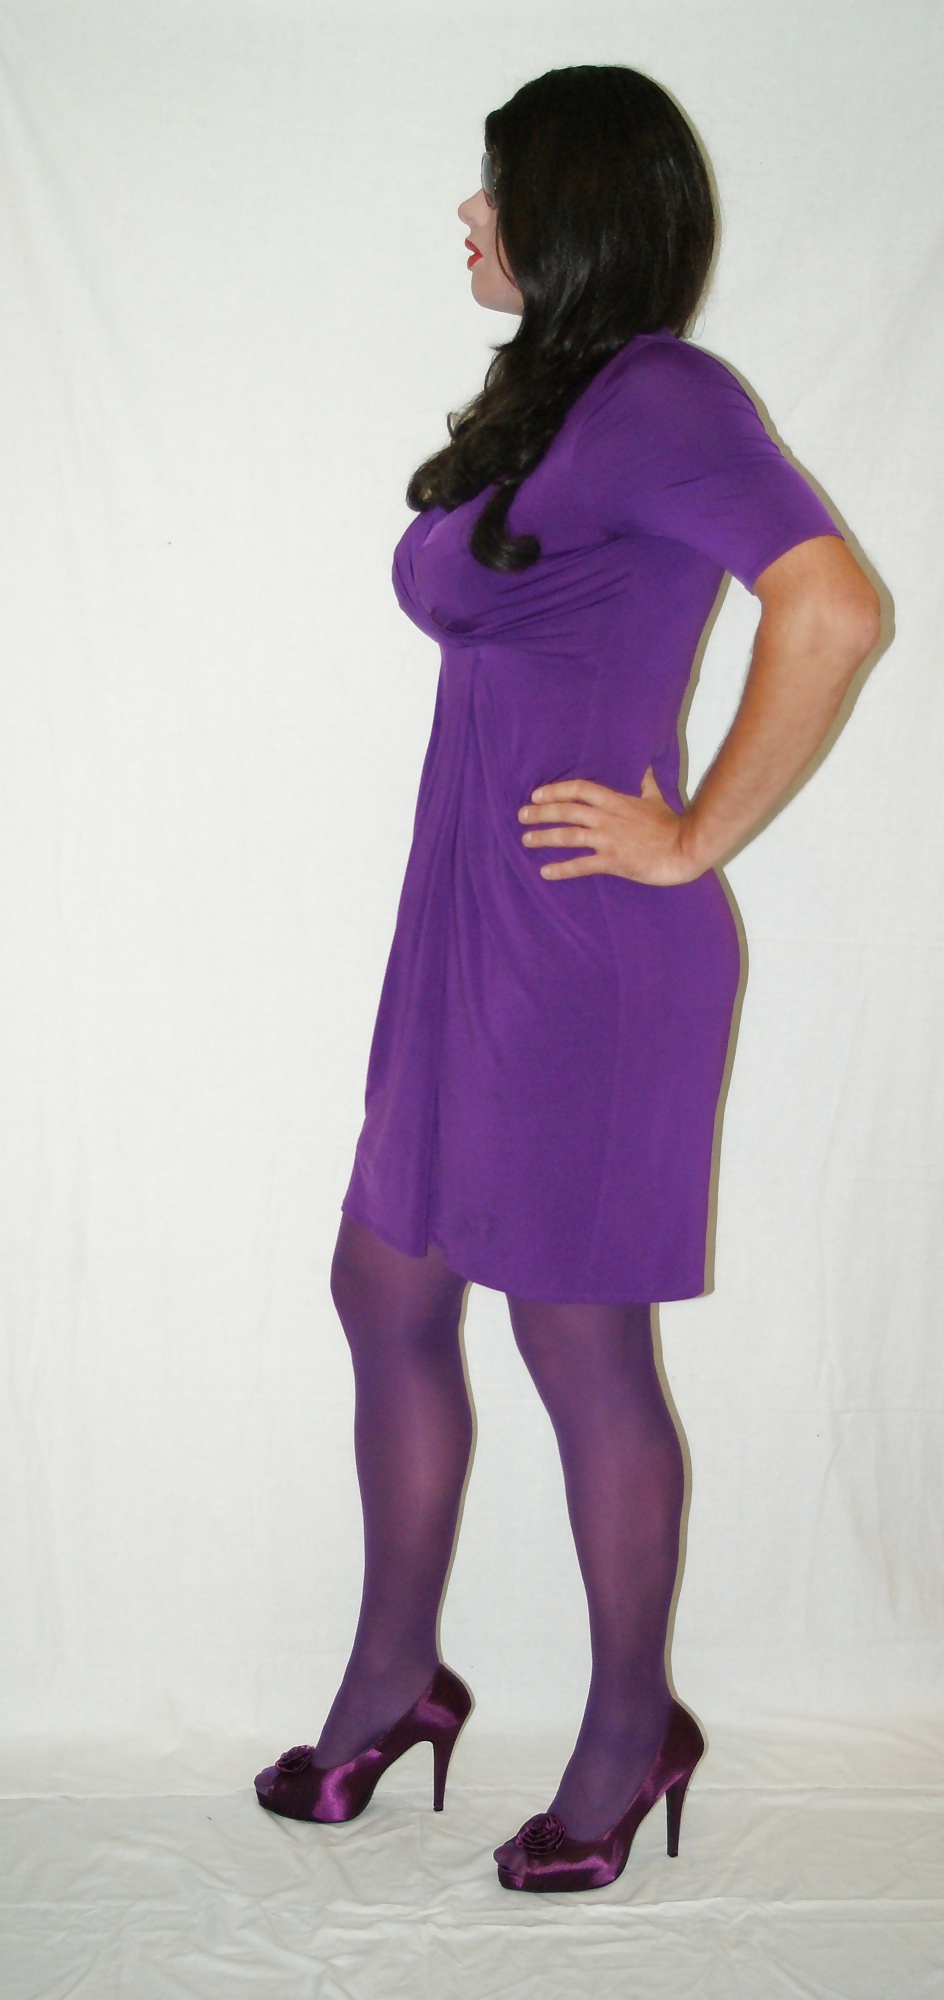 Robe Violette Et Collants #41059987